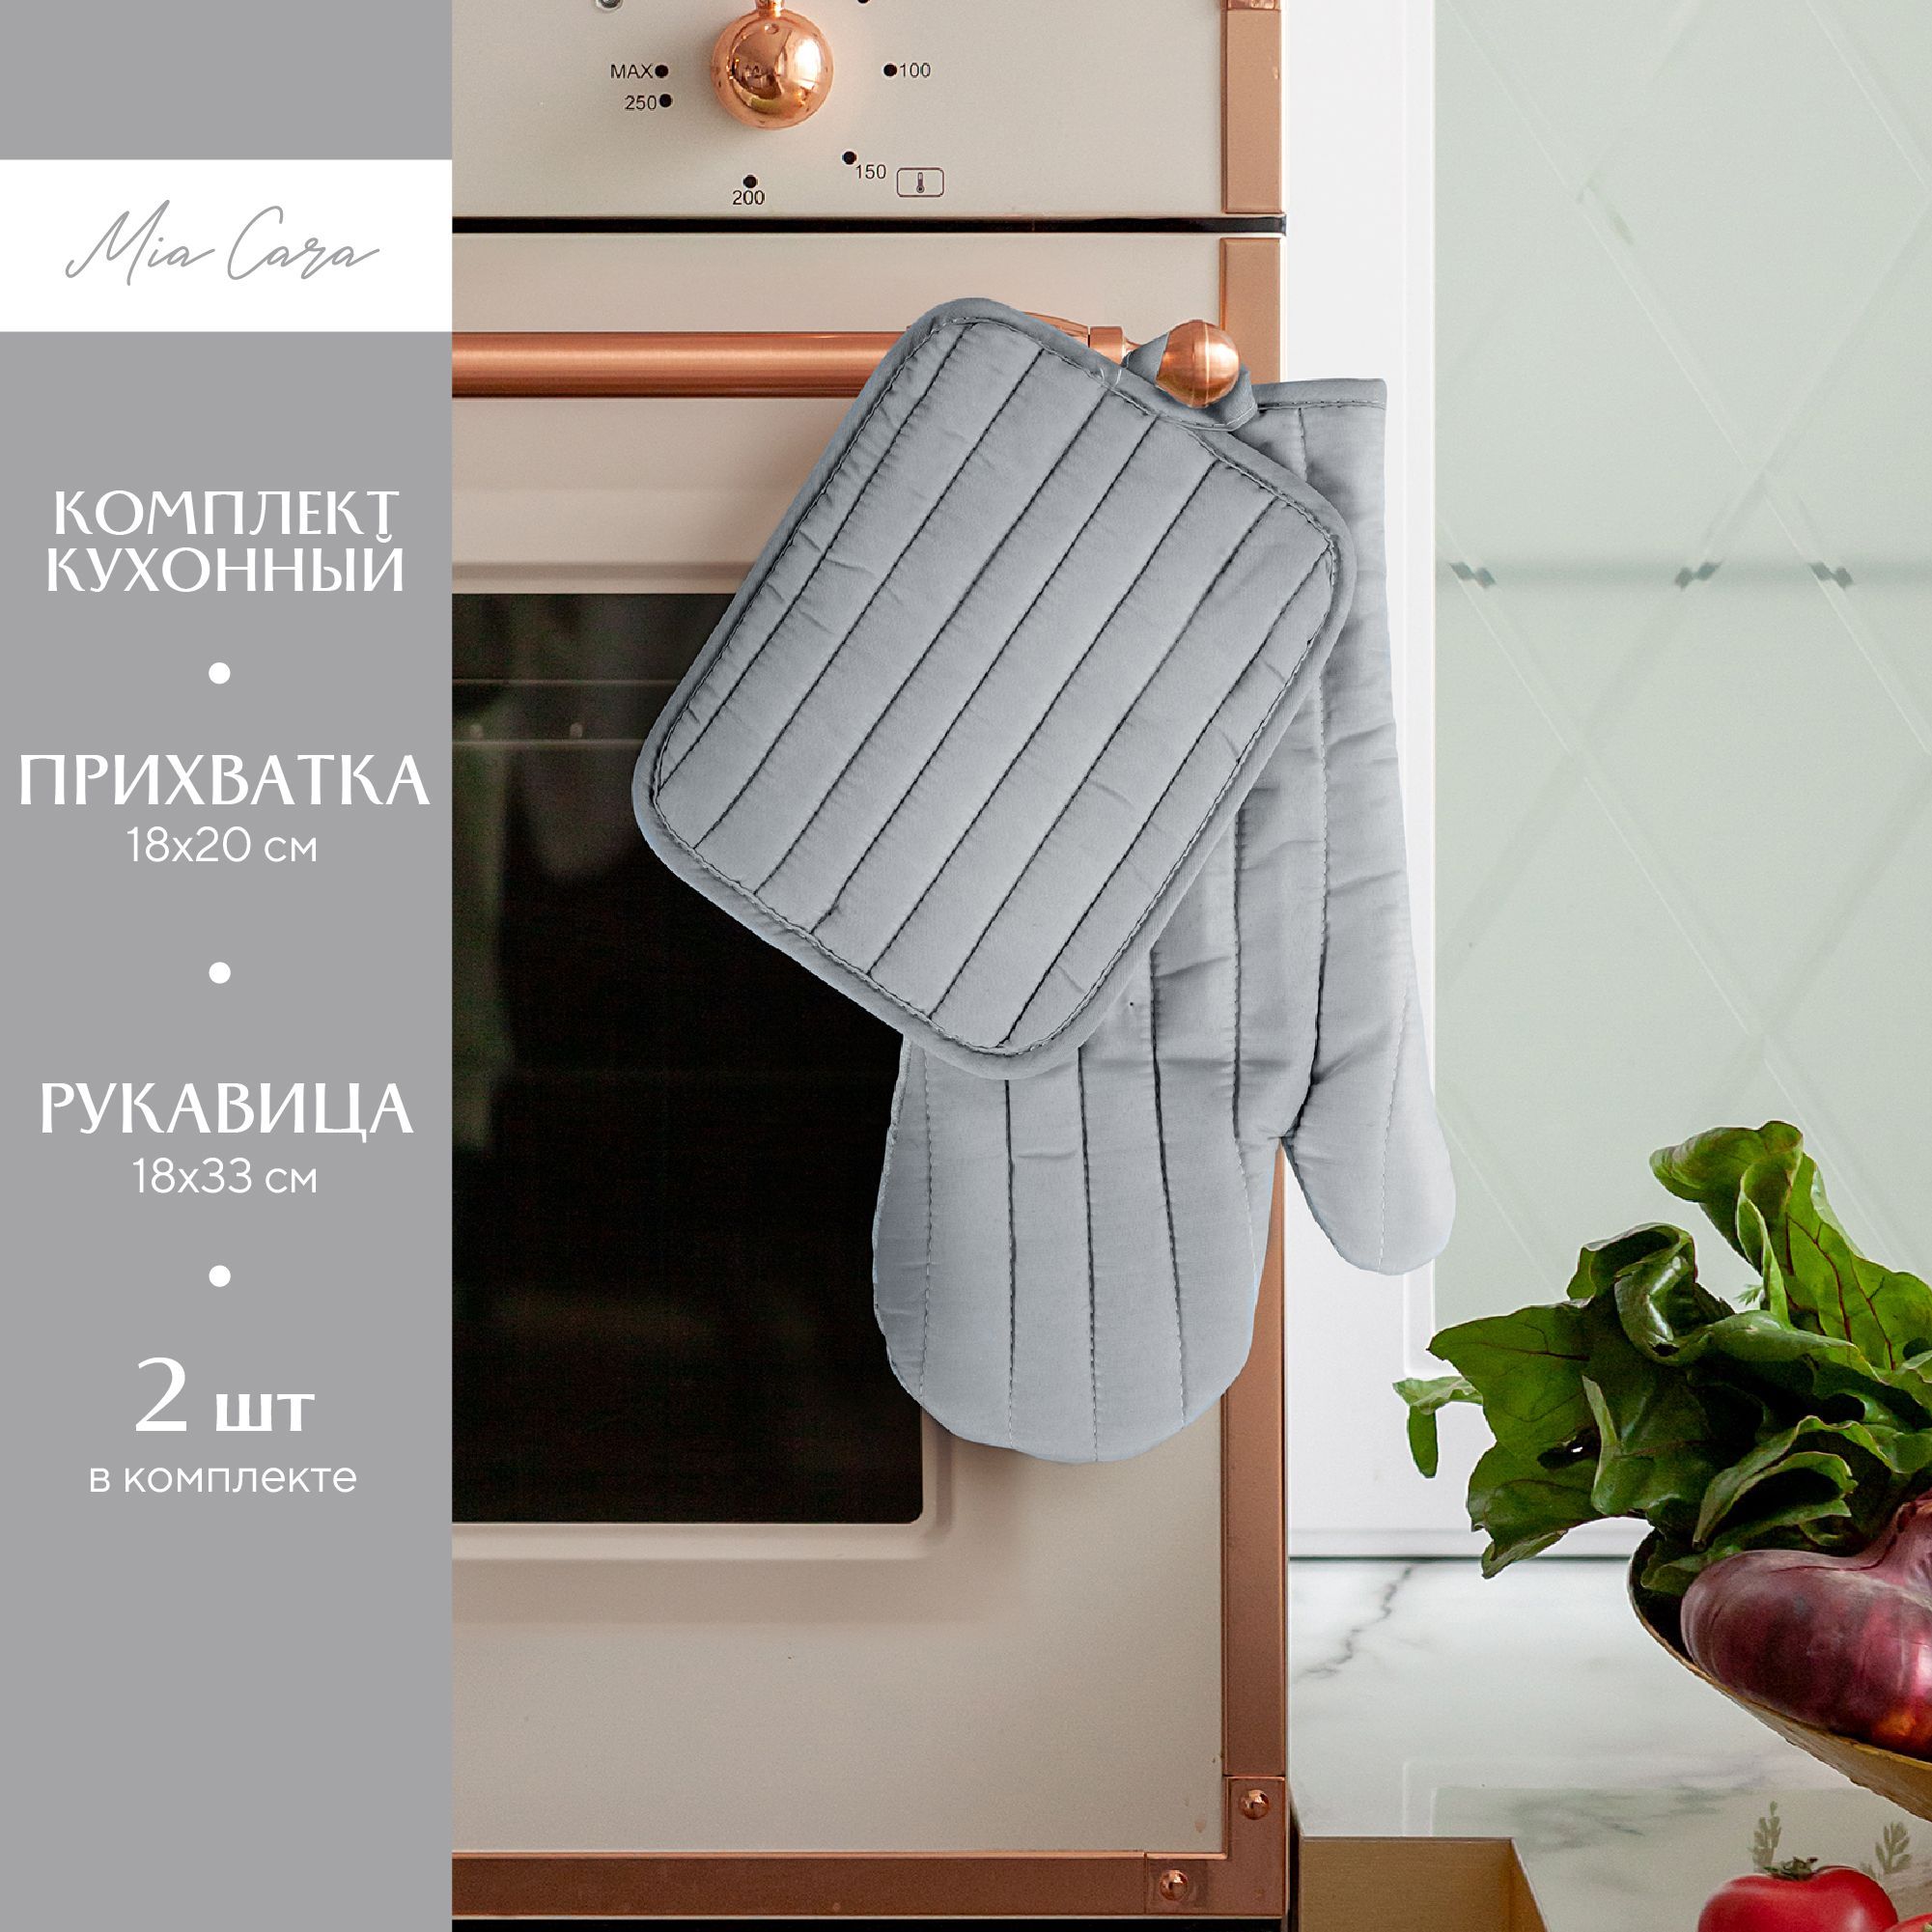 Кухонный набор Mia Cara прихватка 18х20+рукавица 18х33 серый